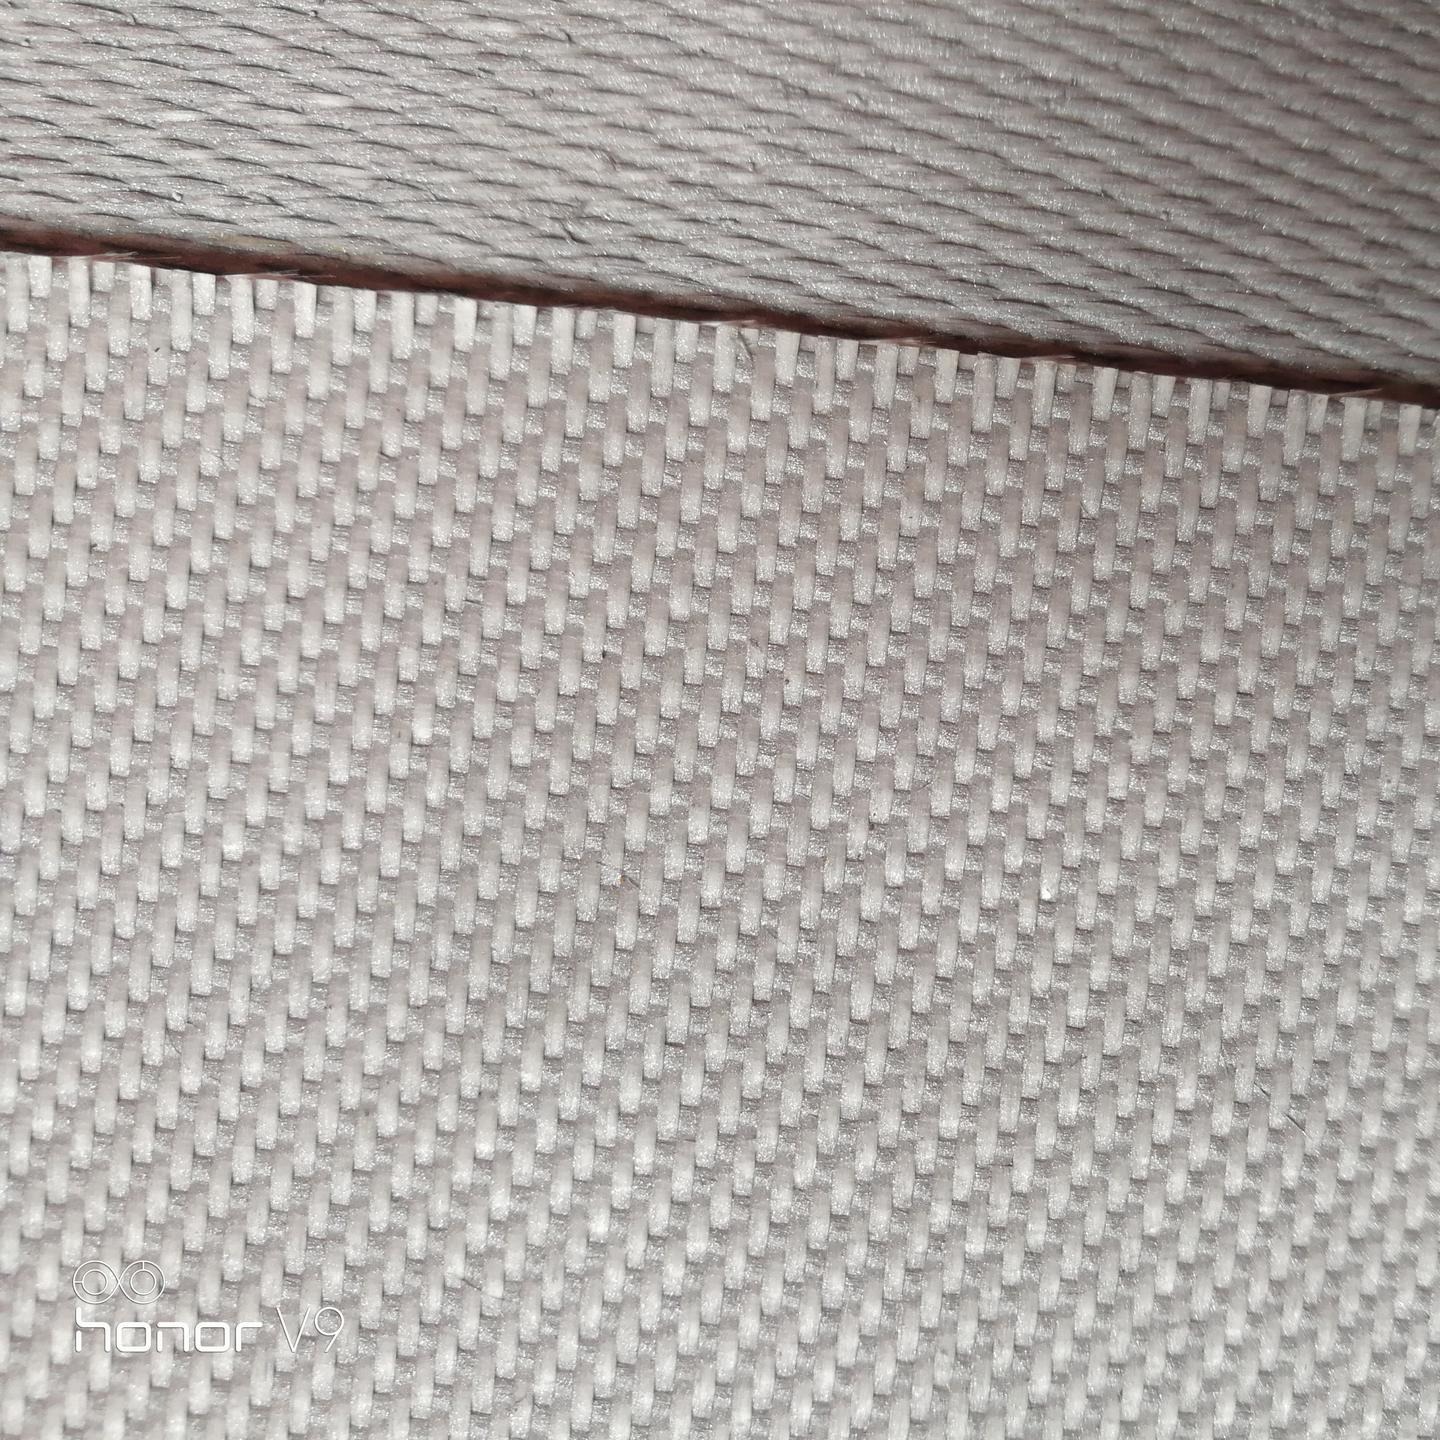 廊坊陶瓷纤维布生产厂家 硅酸铝陶瓷纤维布价格 安朗 自产自销优质陶瓷纤维布 2mm-5mm厚陶瓷纤维布